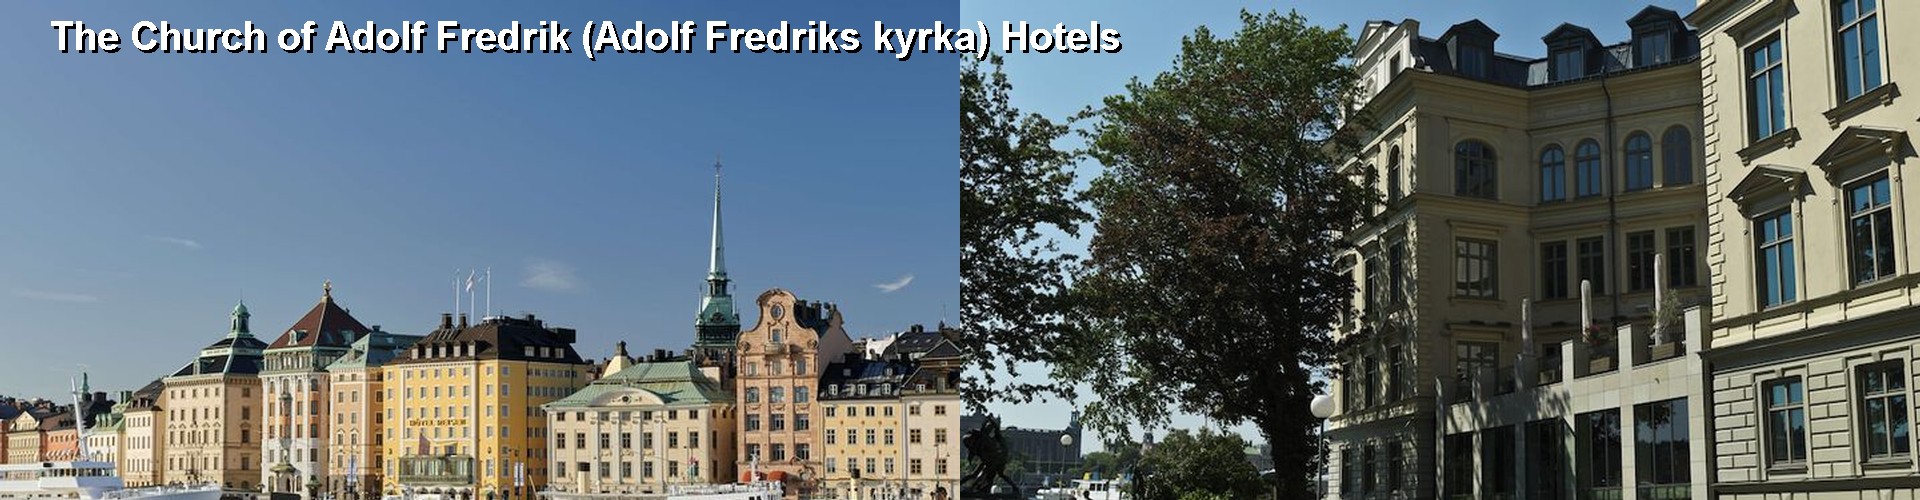 5 Best Hotels near The Church of Adolf Fredrik (Adolf Fredriks kyrka)